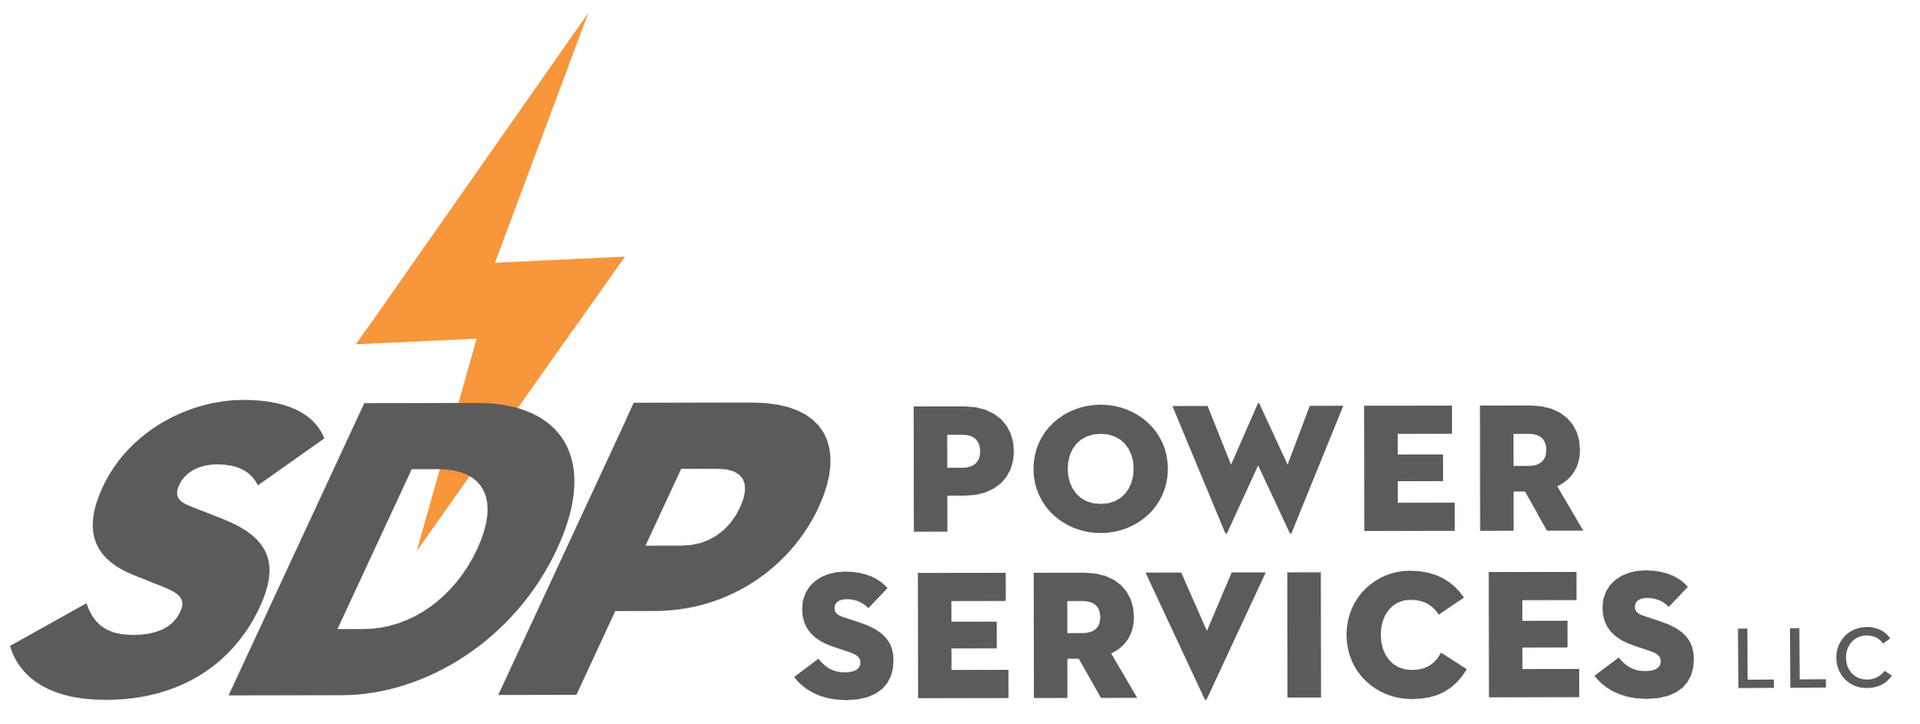 Diesel Generator Repair Services | SDP Power Services